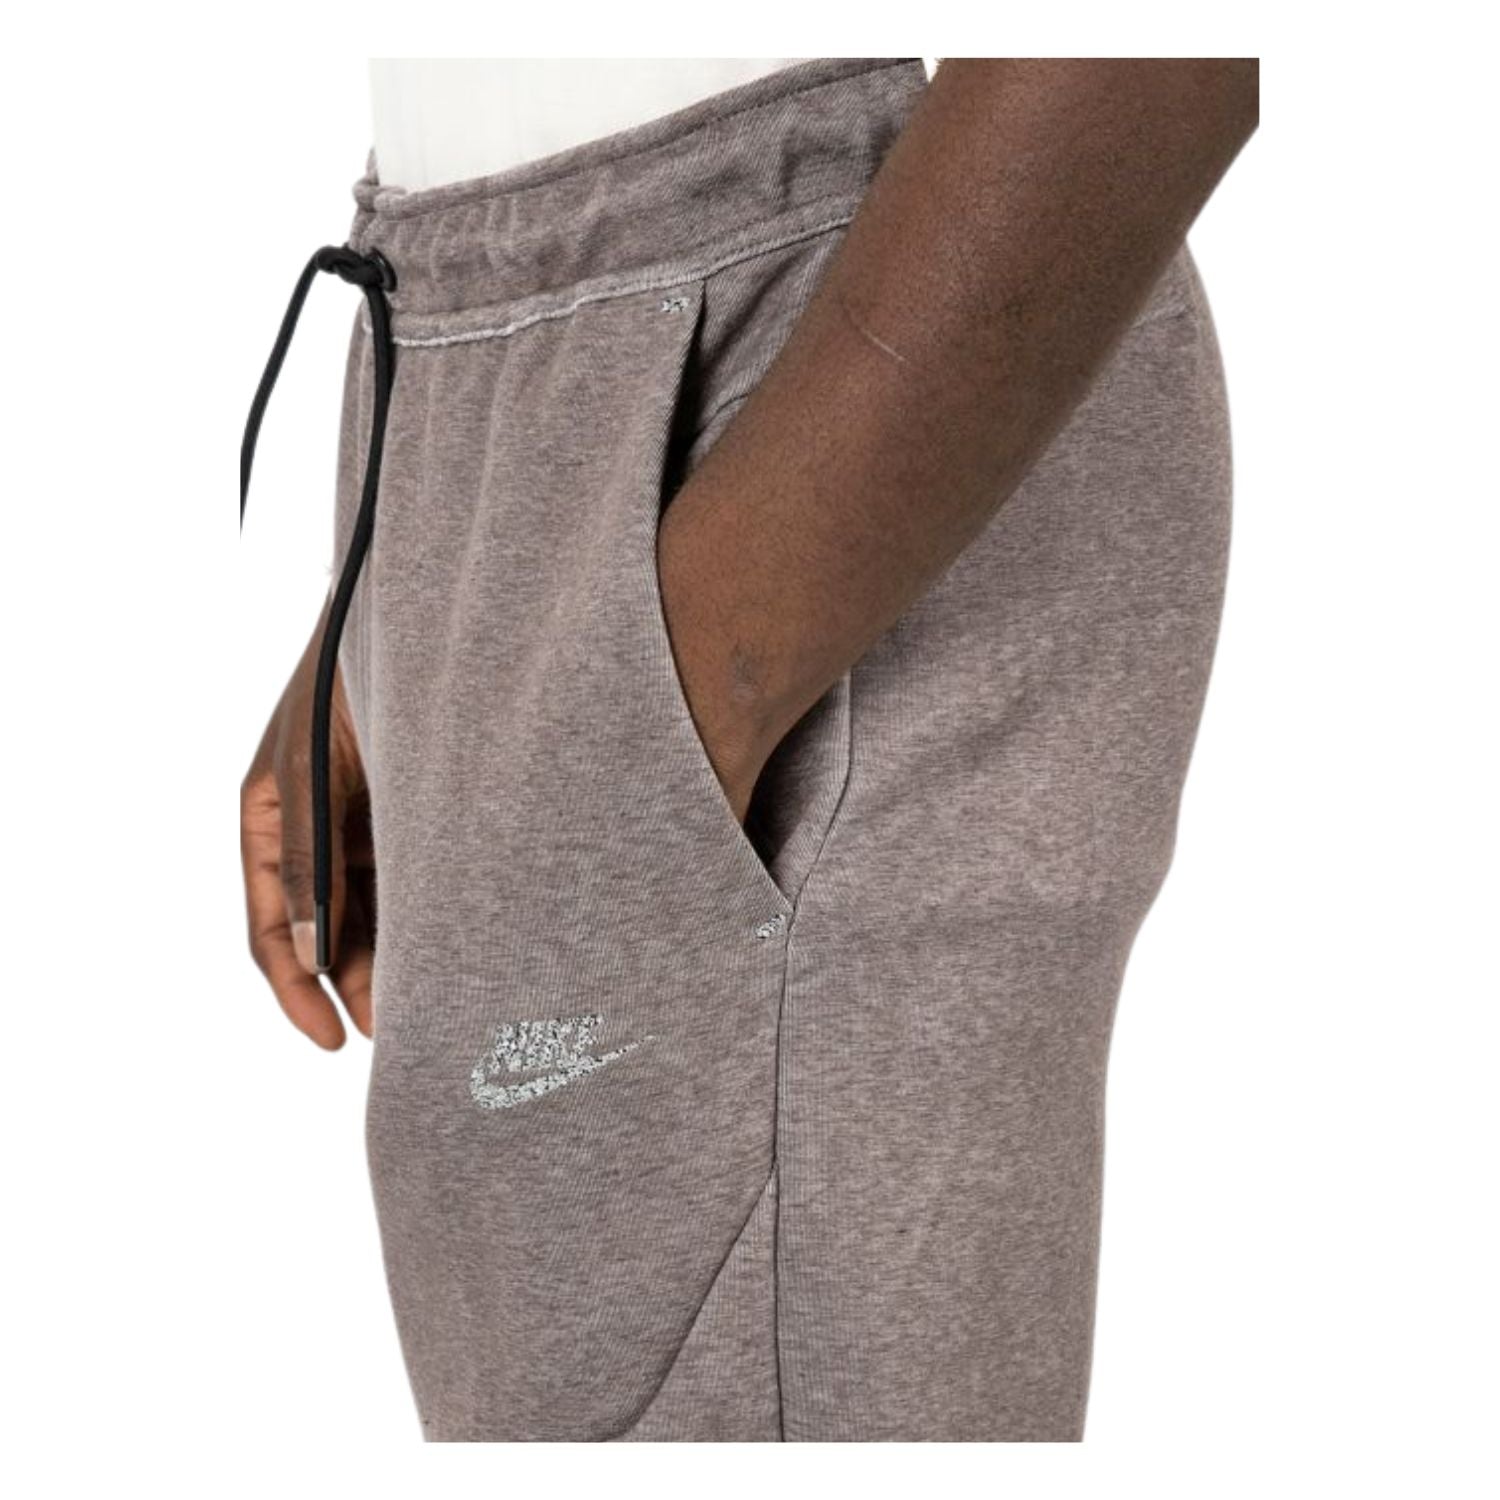 Nike Sportswear Tech Fleece Jogger Pants Ironstone Heather/Black